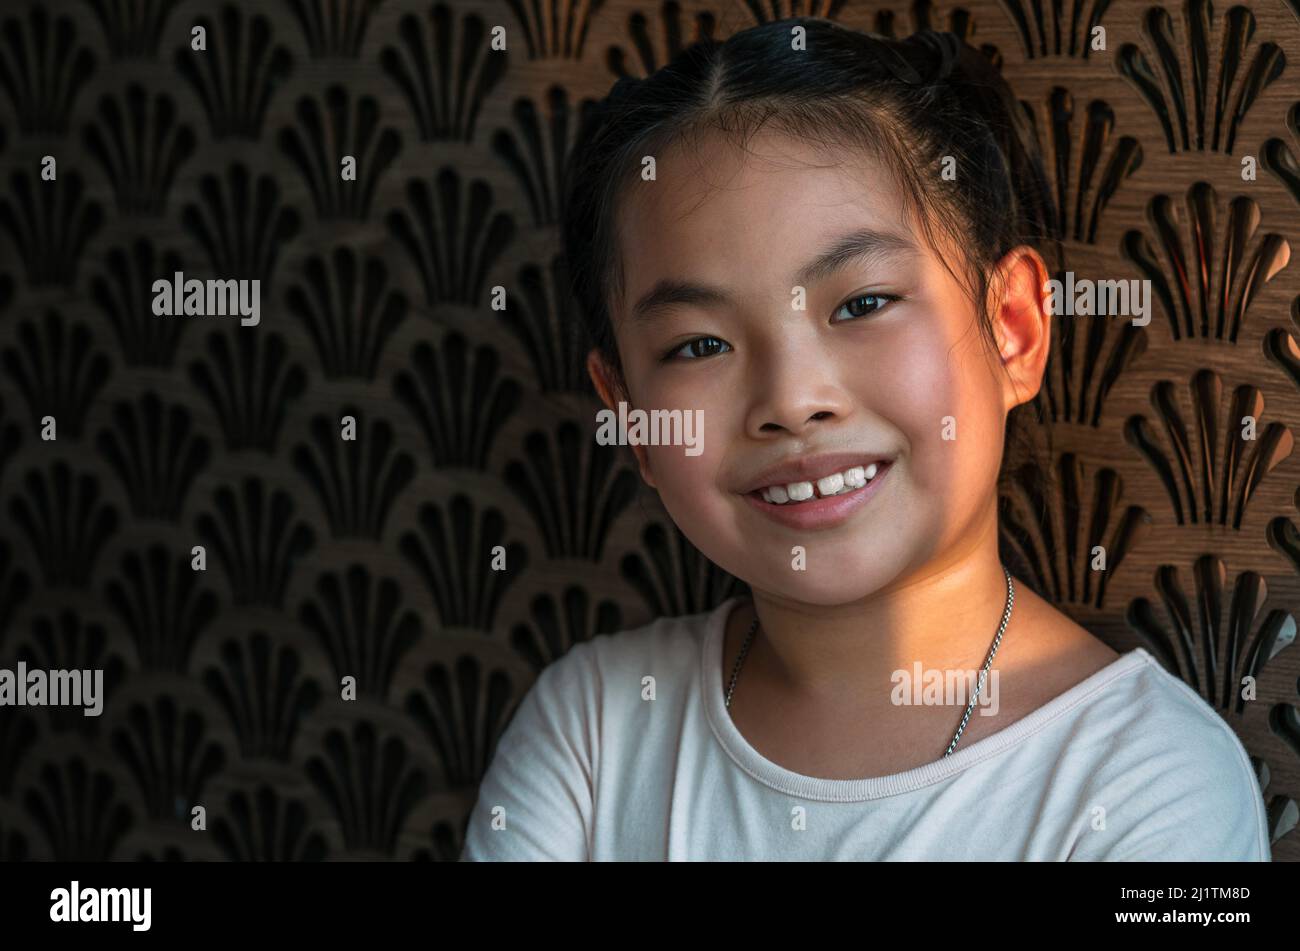 Portrait von asiatischen kleinen Mädchen mit süßen Lächeln, Augen suchen Kamera, Hintergrund der schönen Dekoration Wand, natürliches Sonnenlicht aus dem Fenster. Asiatischer Kanal Stockfoto